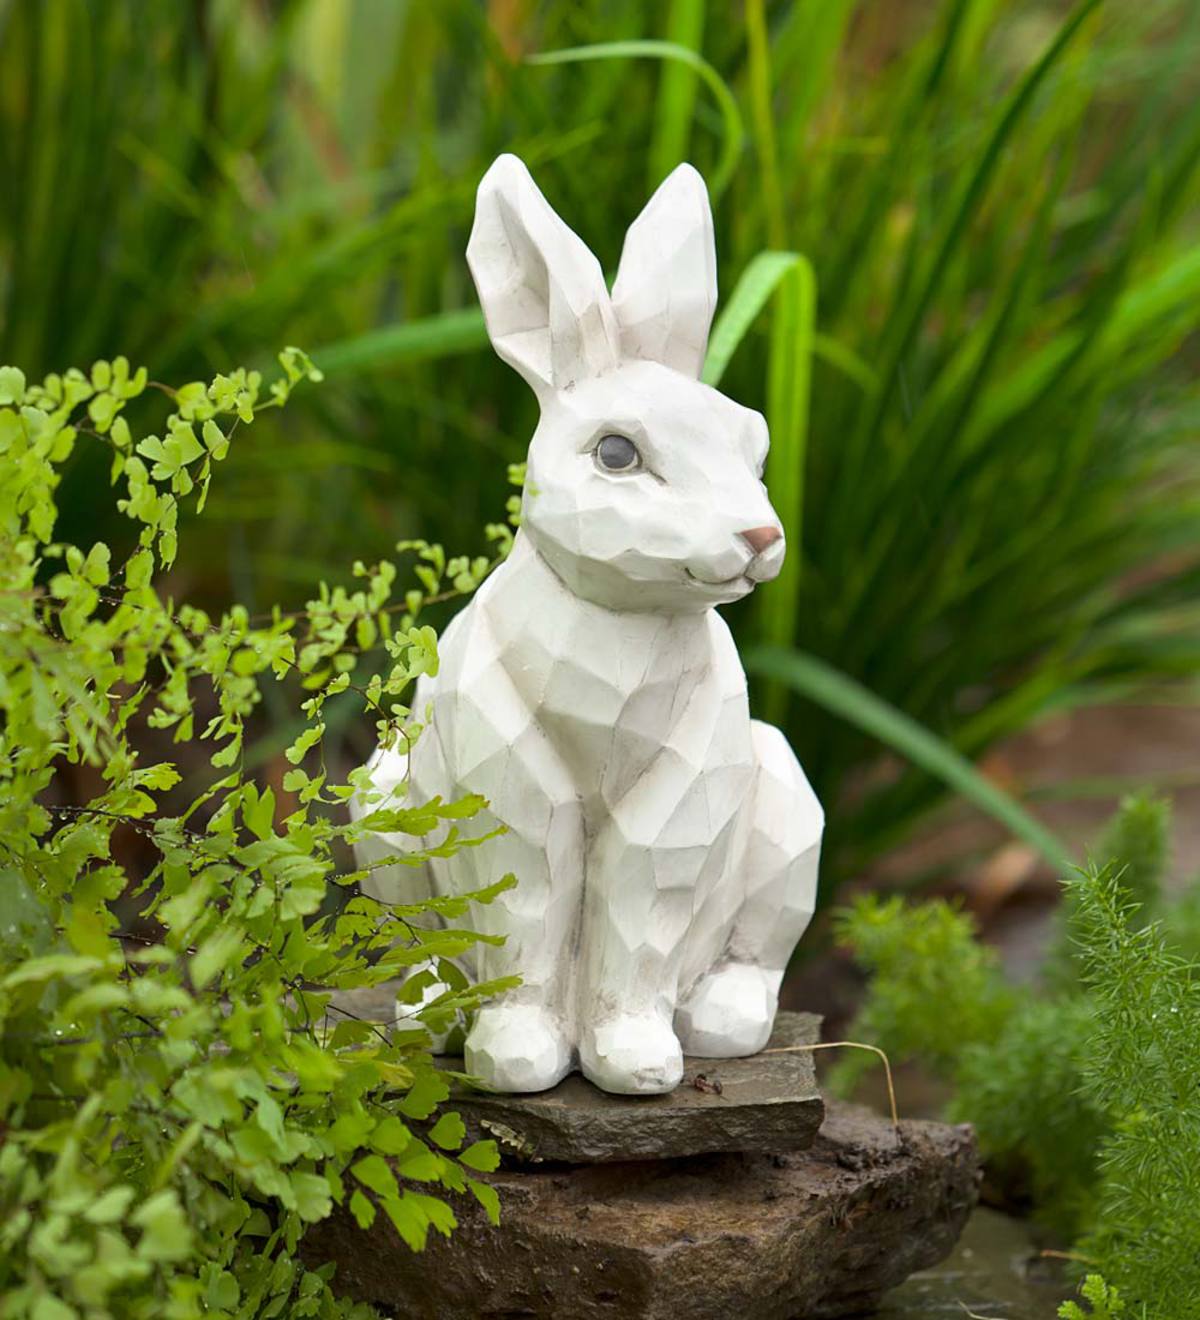 Woodcut-Style Rabbit Garden Statue - Fox